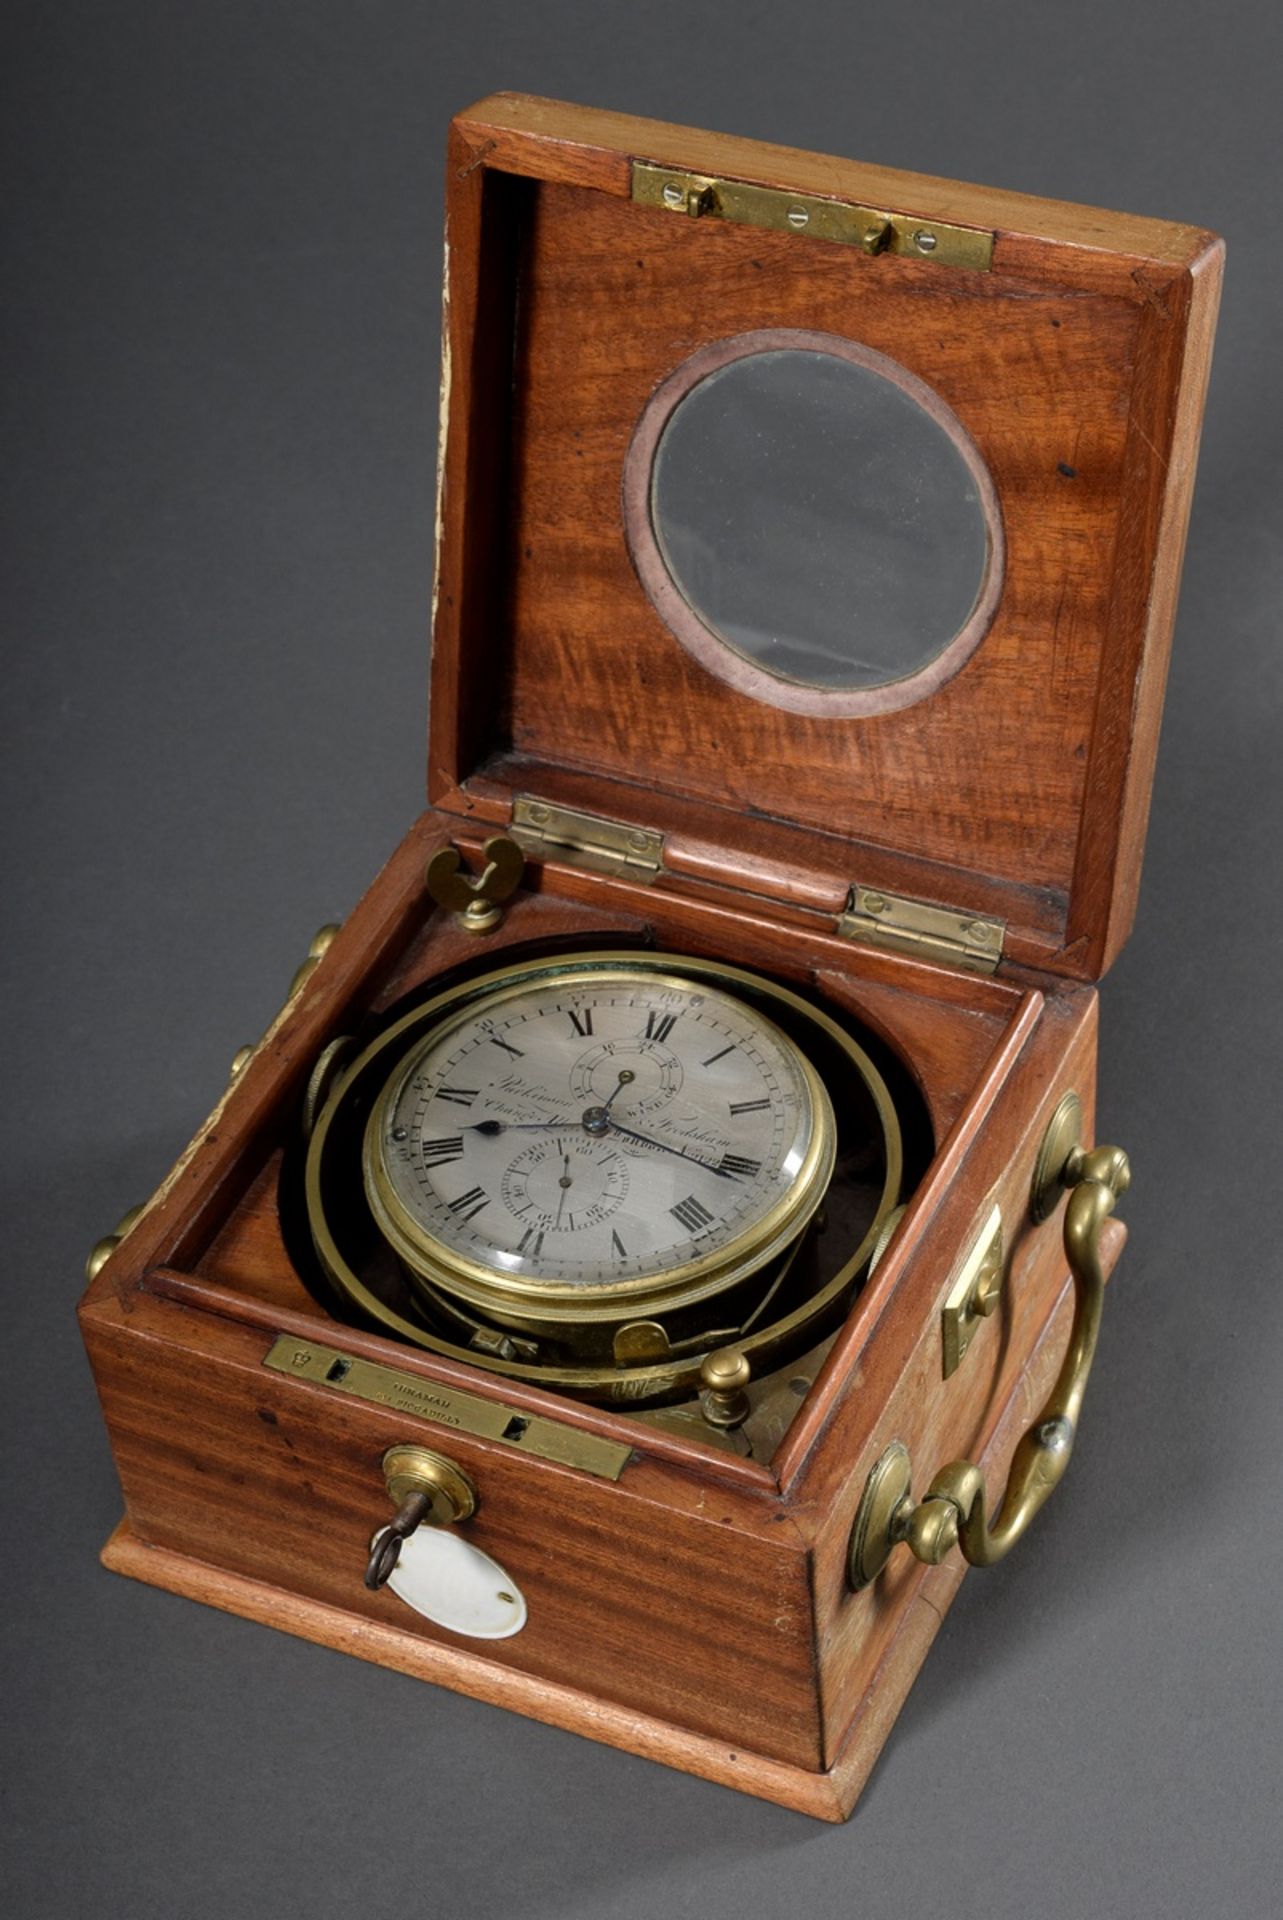 Schiffschronometer in kardanischer Aufhängung, bez.: "Parkinson & Frodsham, Nr.